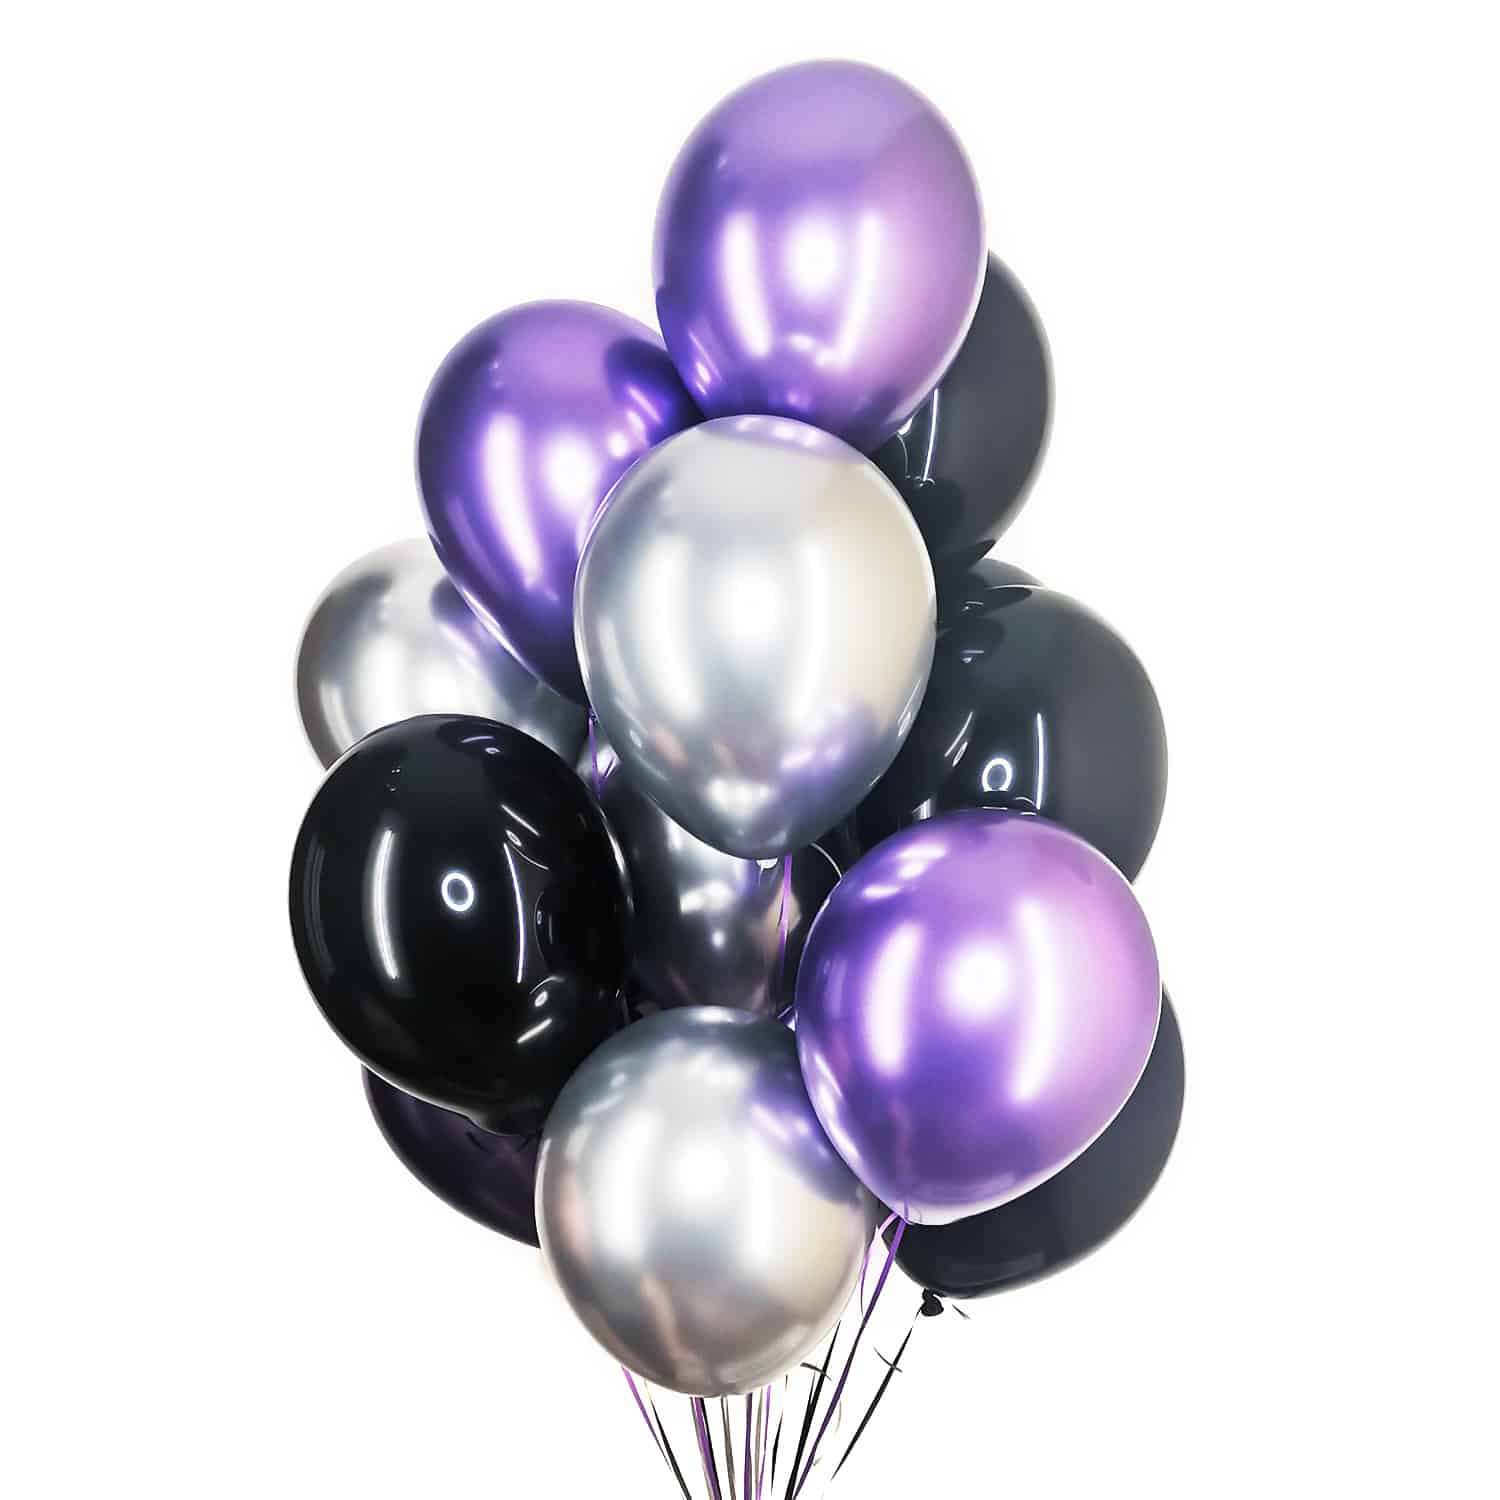 Связка из 12 шаров фиолетовые, черные, серебро 